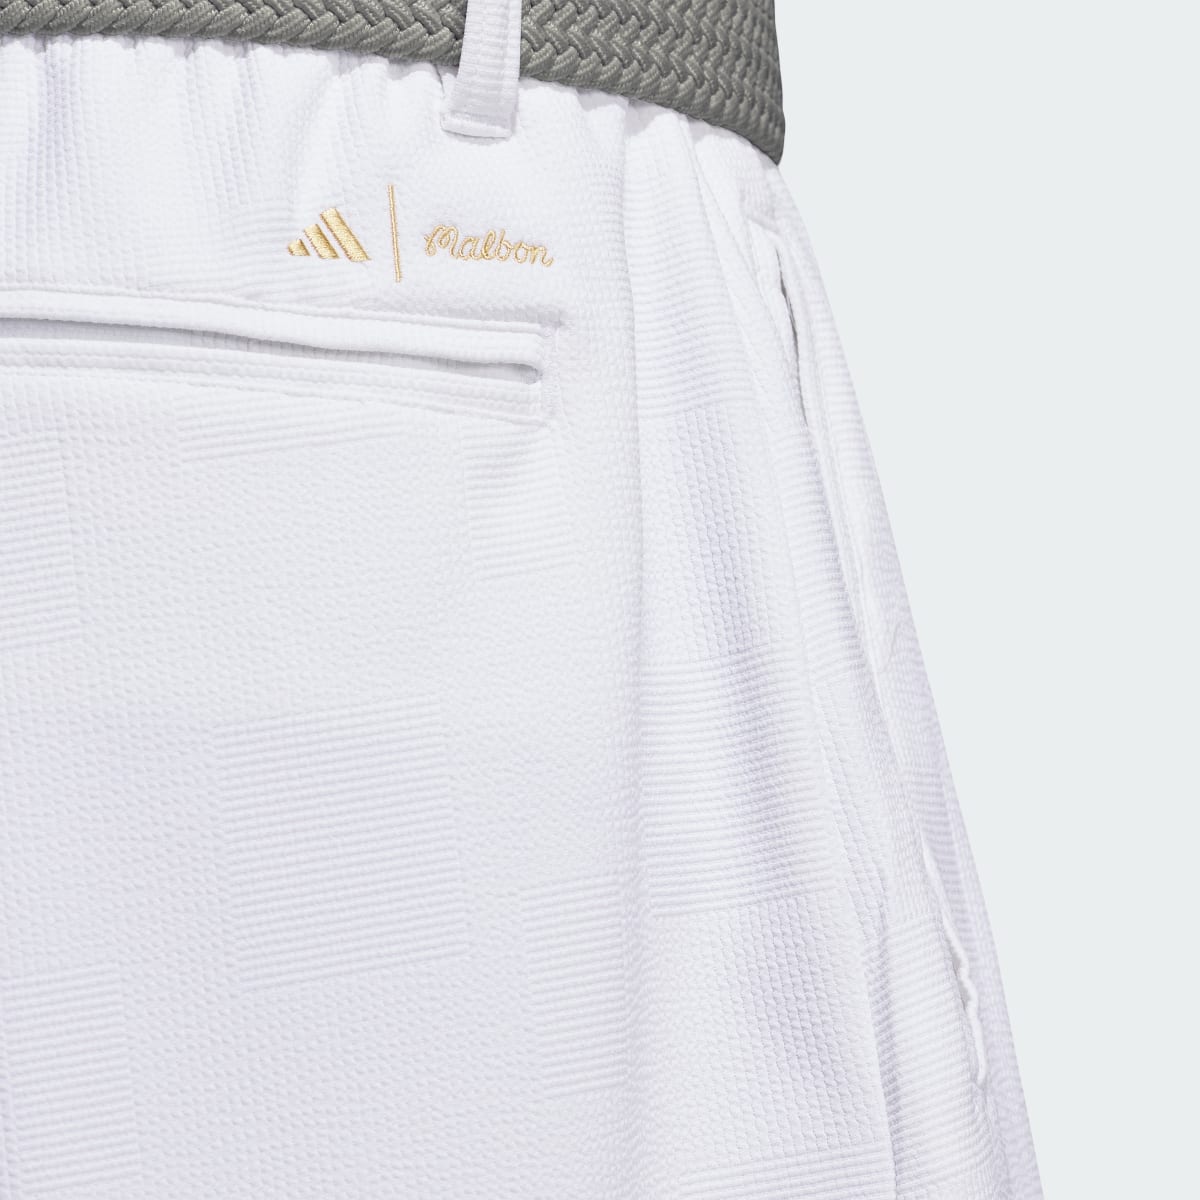 Adidas Short Malbon. 5